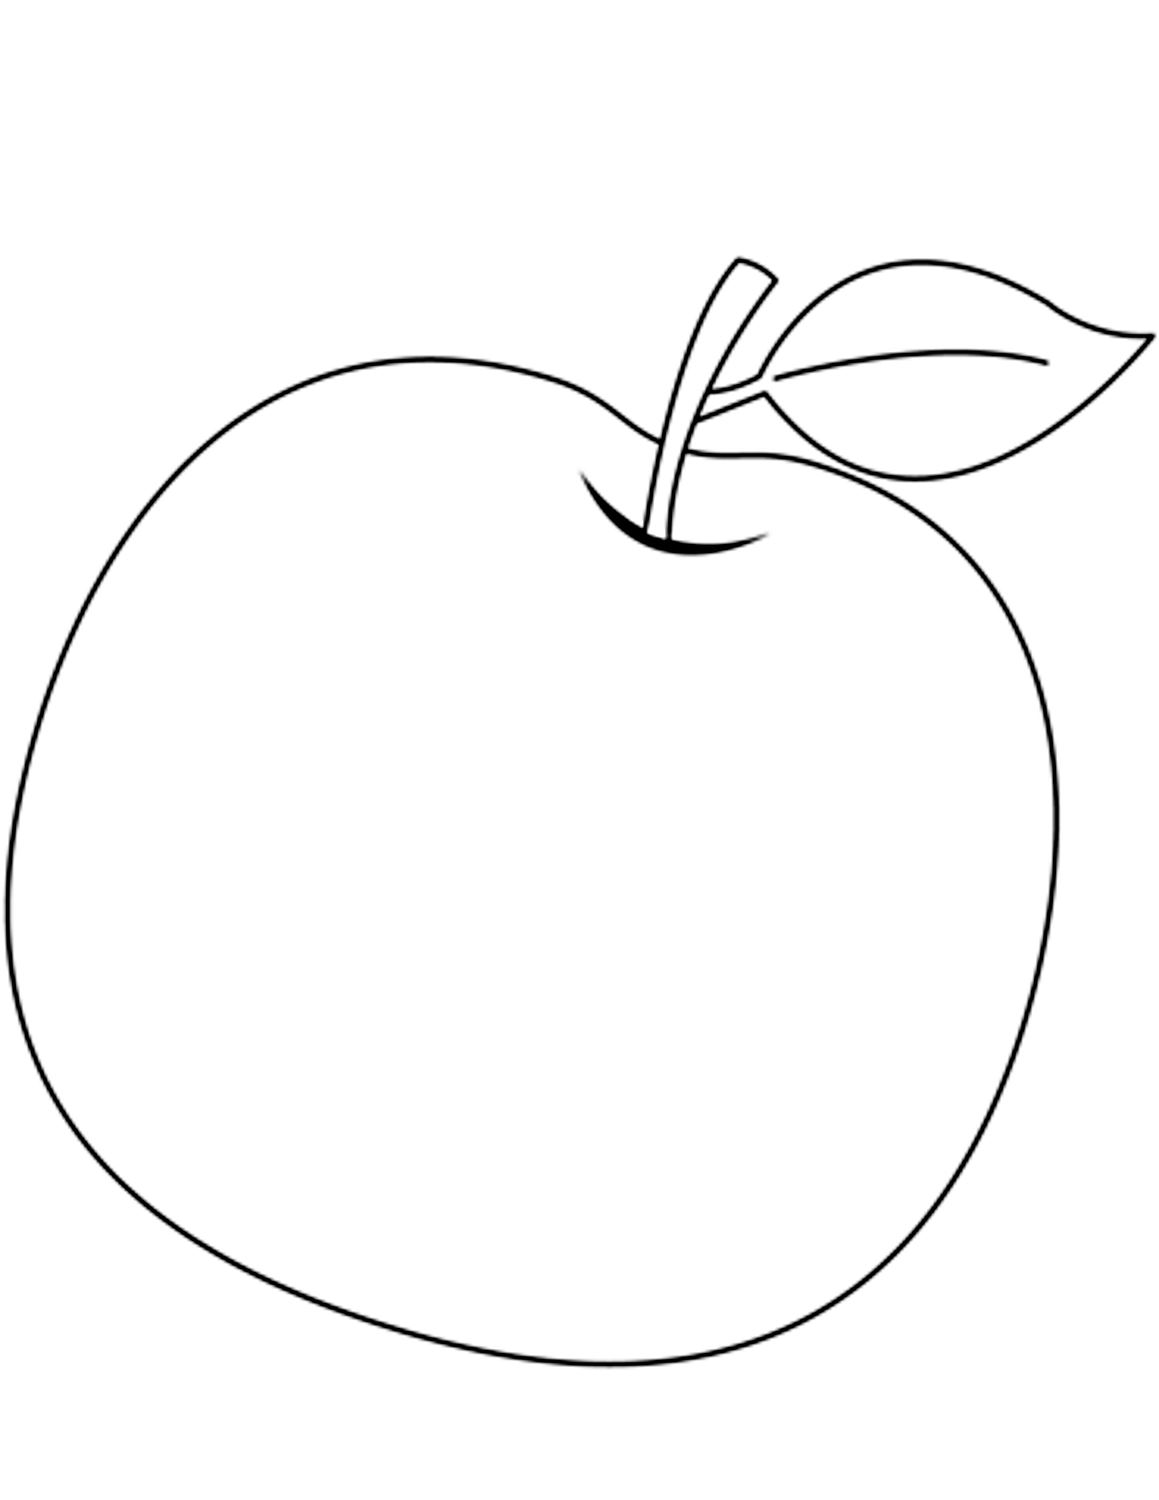 Disegno mela 18 di mele da stampare e colorare